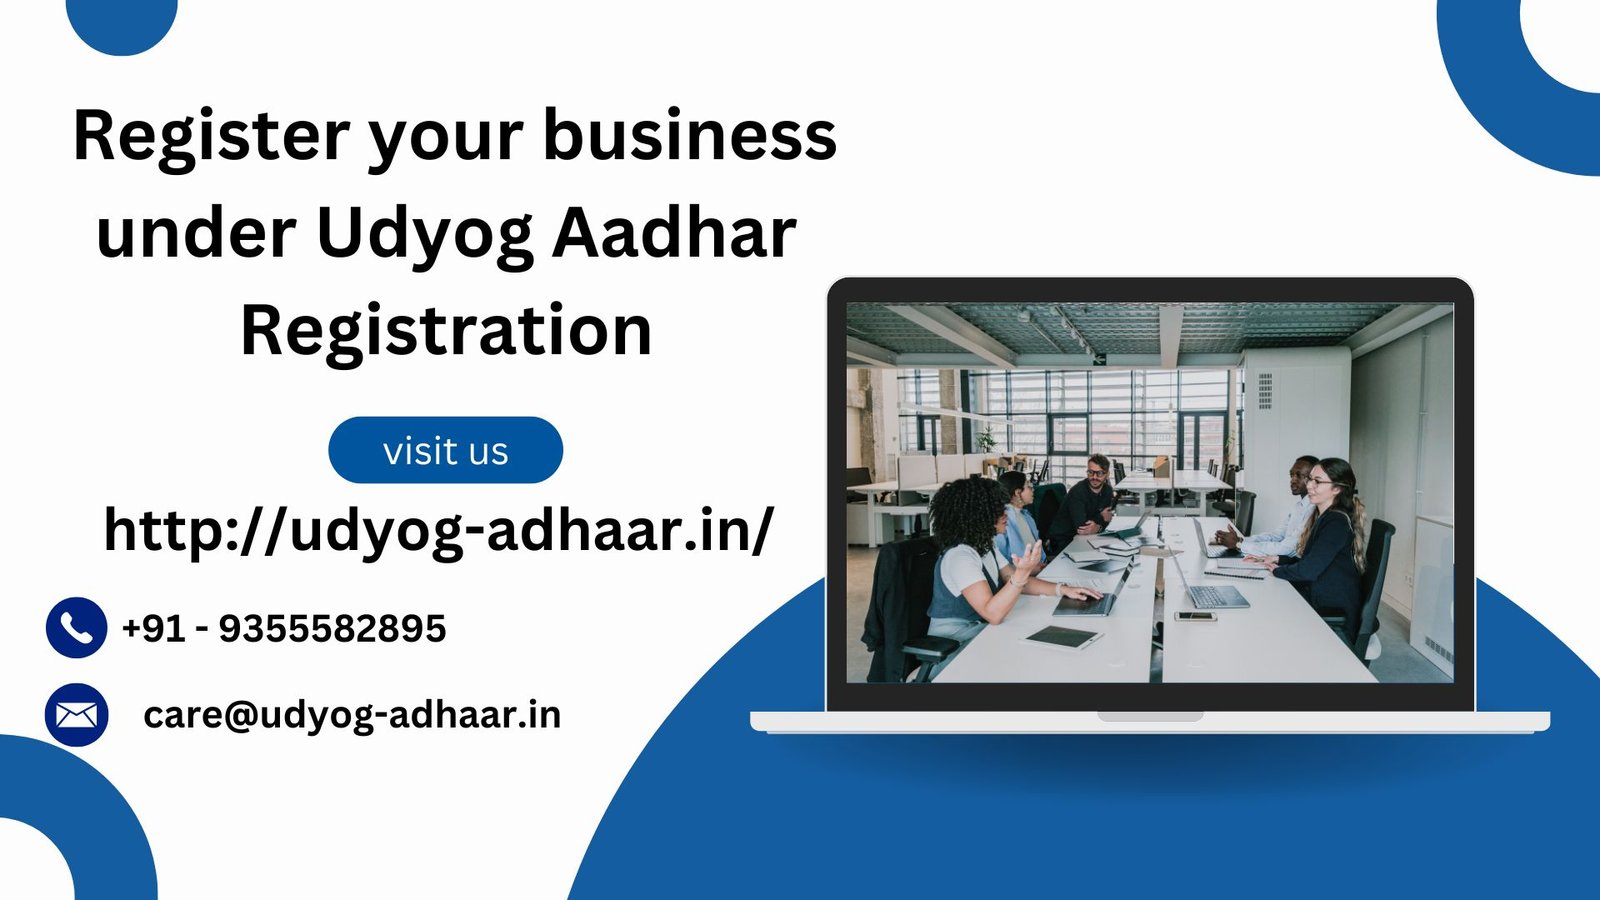 Register your business under Udyog Aadhar Registration